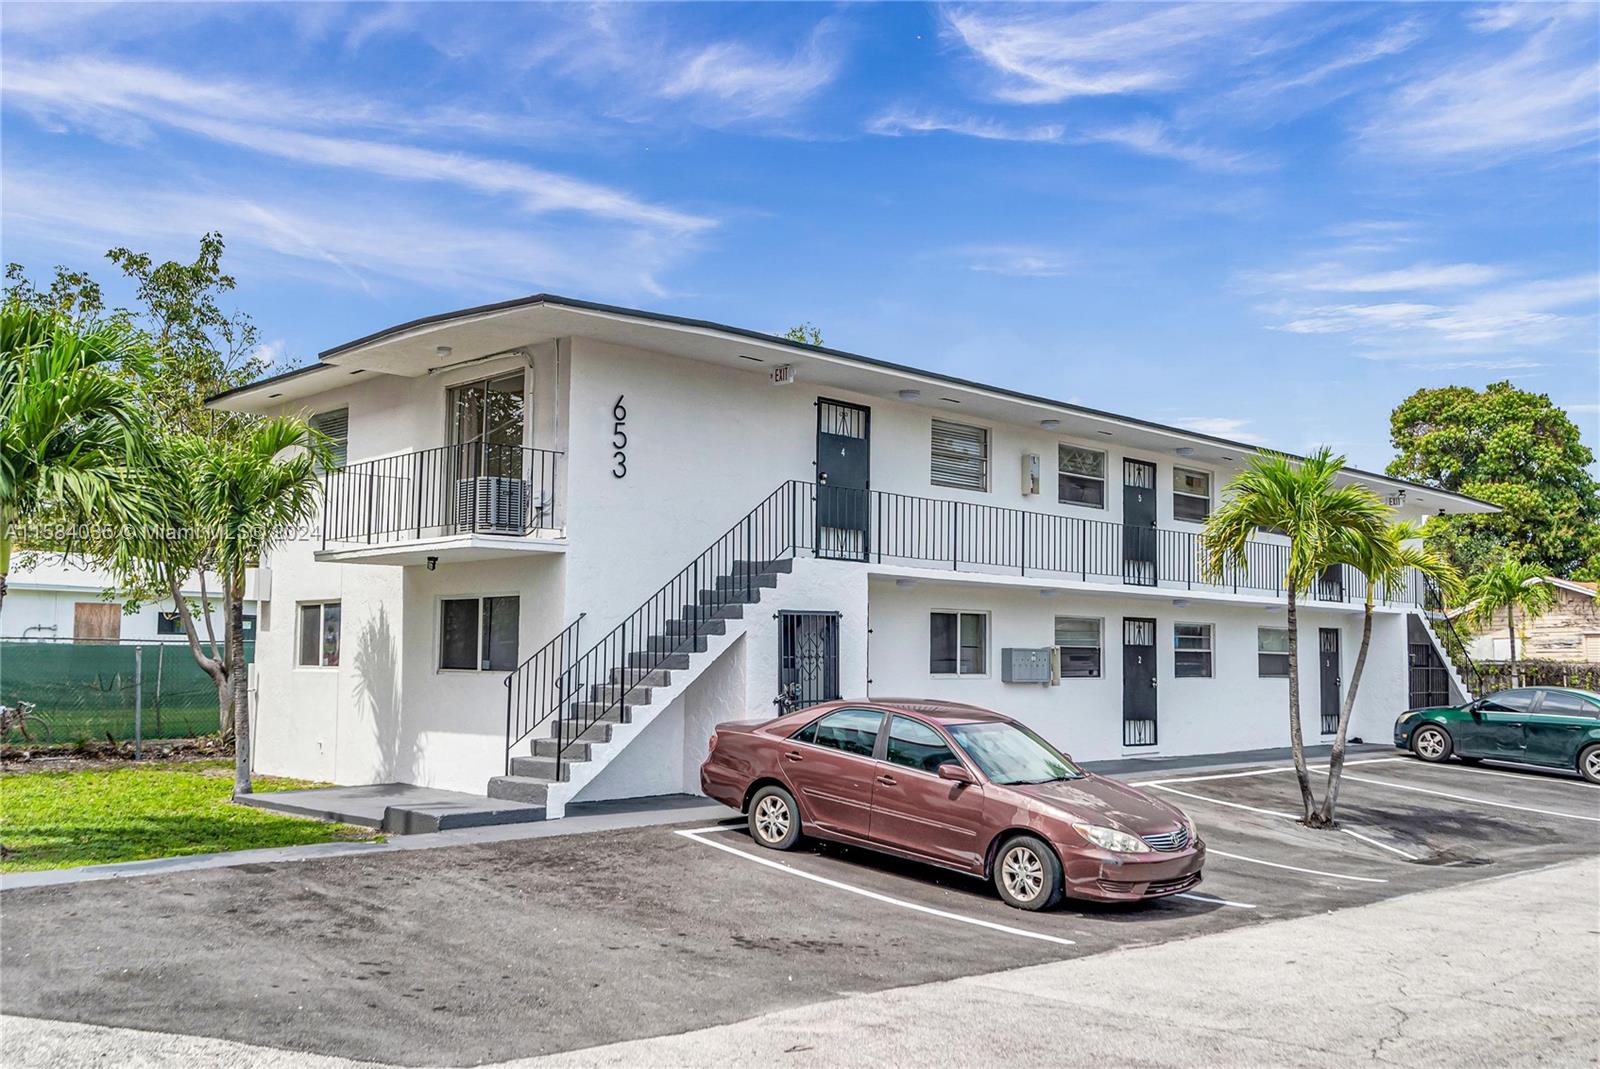 Rental Property at 653 Nw 30th St St, Miami, Broward County, Florida -  - $1,450,000 MO.